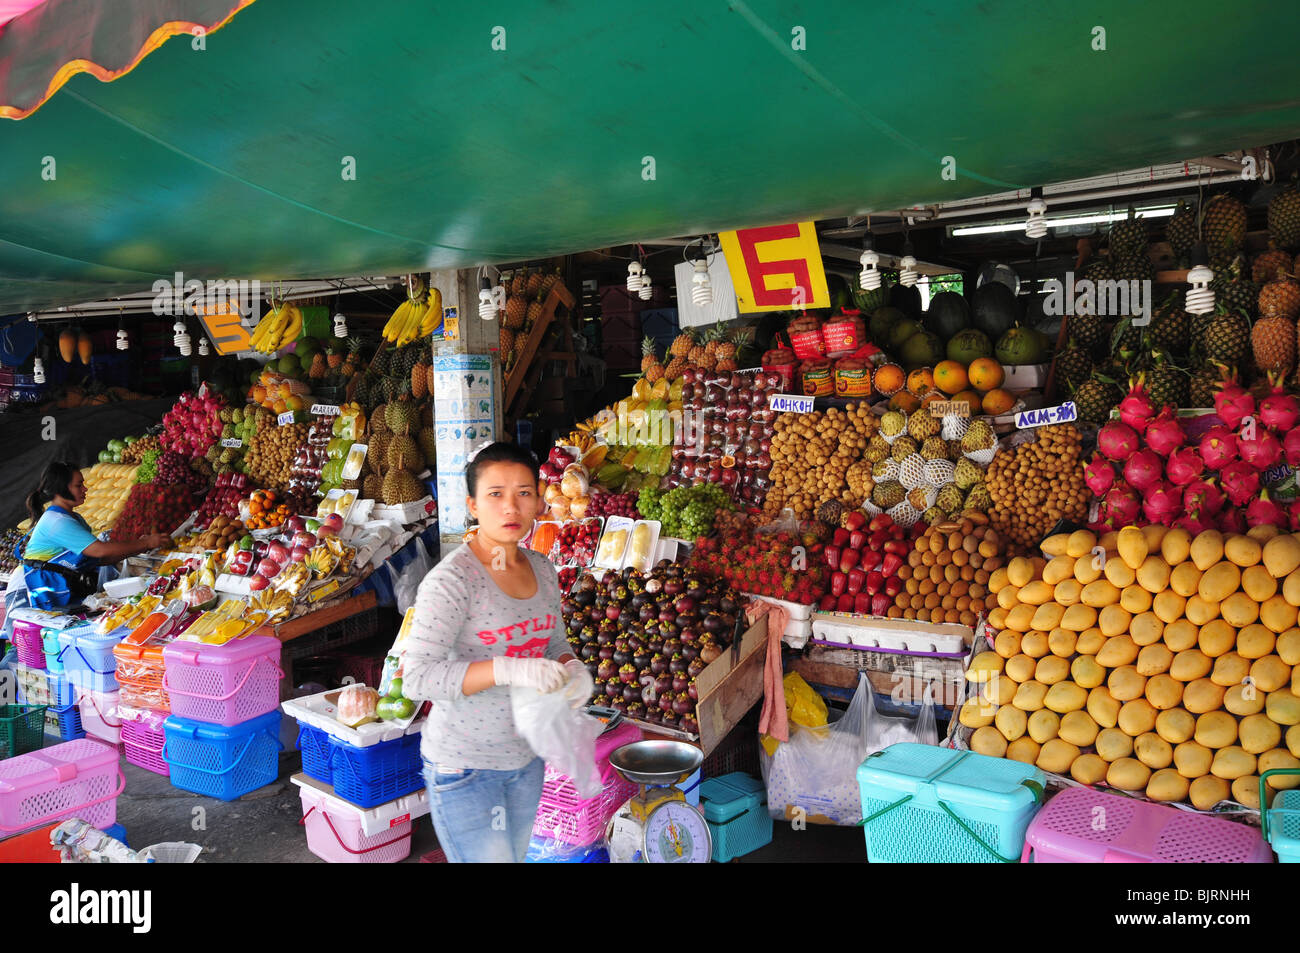 Fruit market Stock Photo